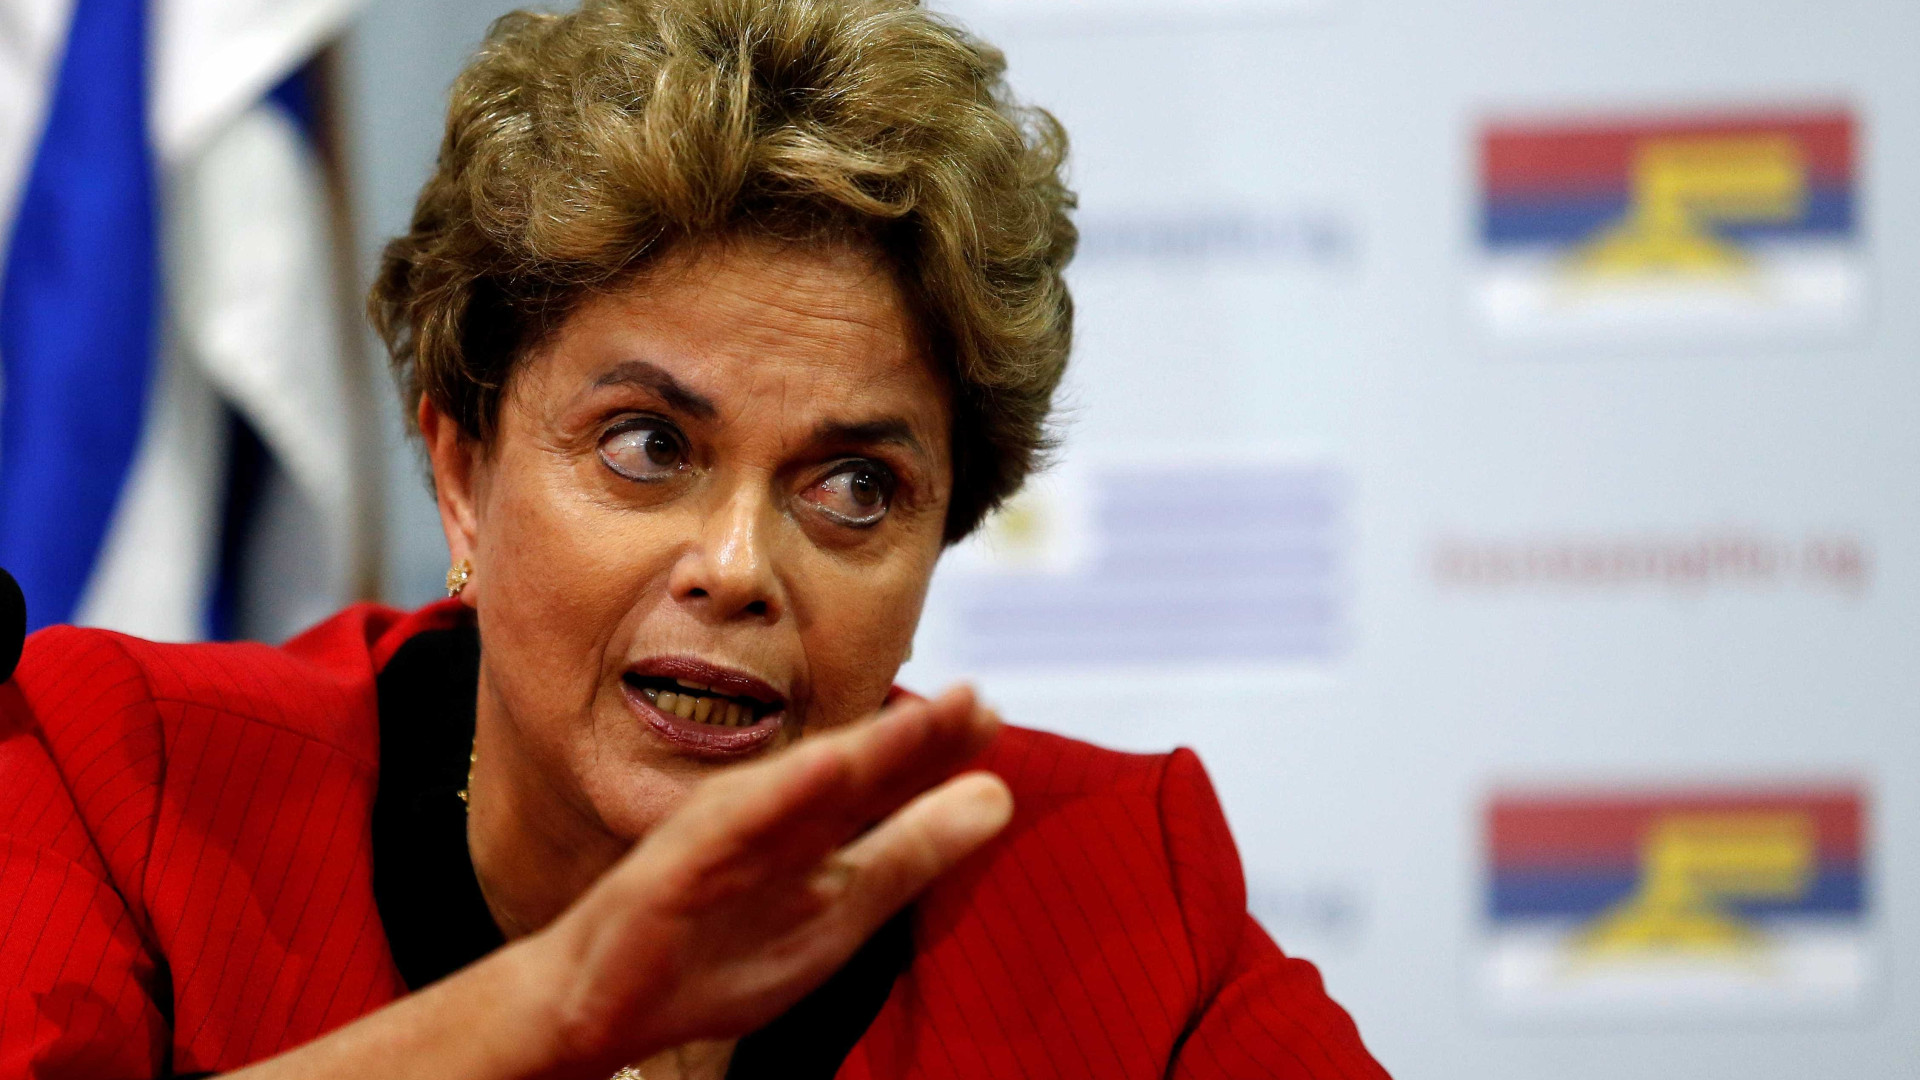 Prender Lula representaria mudança
ilegítima nas eleições, diz Dilma